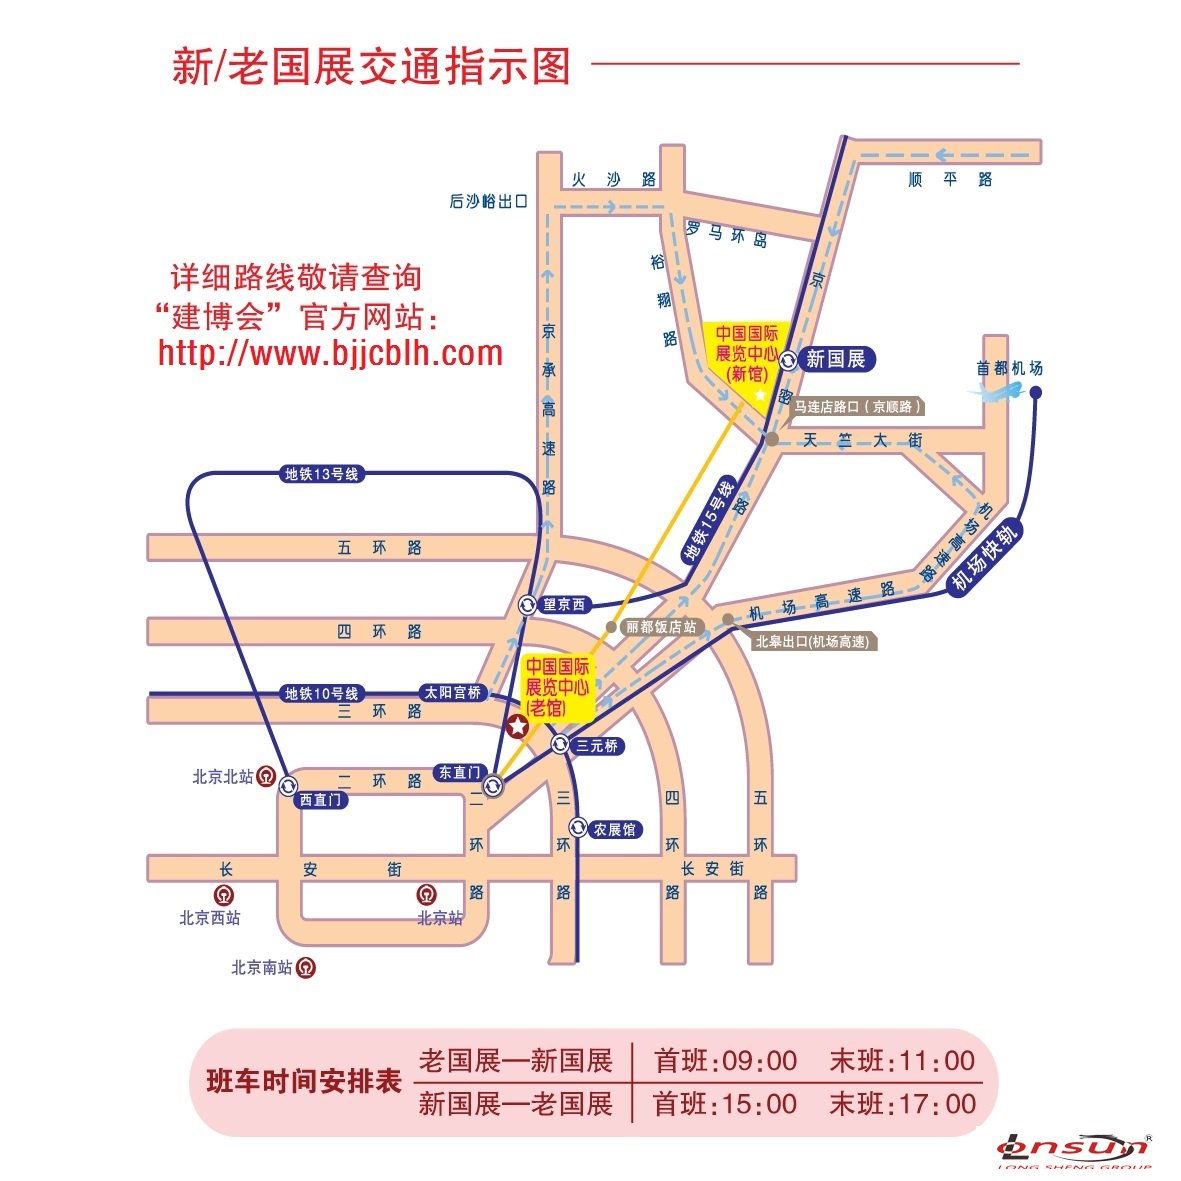 【北京上海门窗展会】2019春季国际门窗展会(图2)